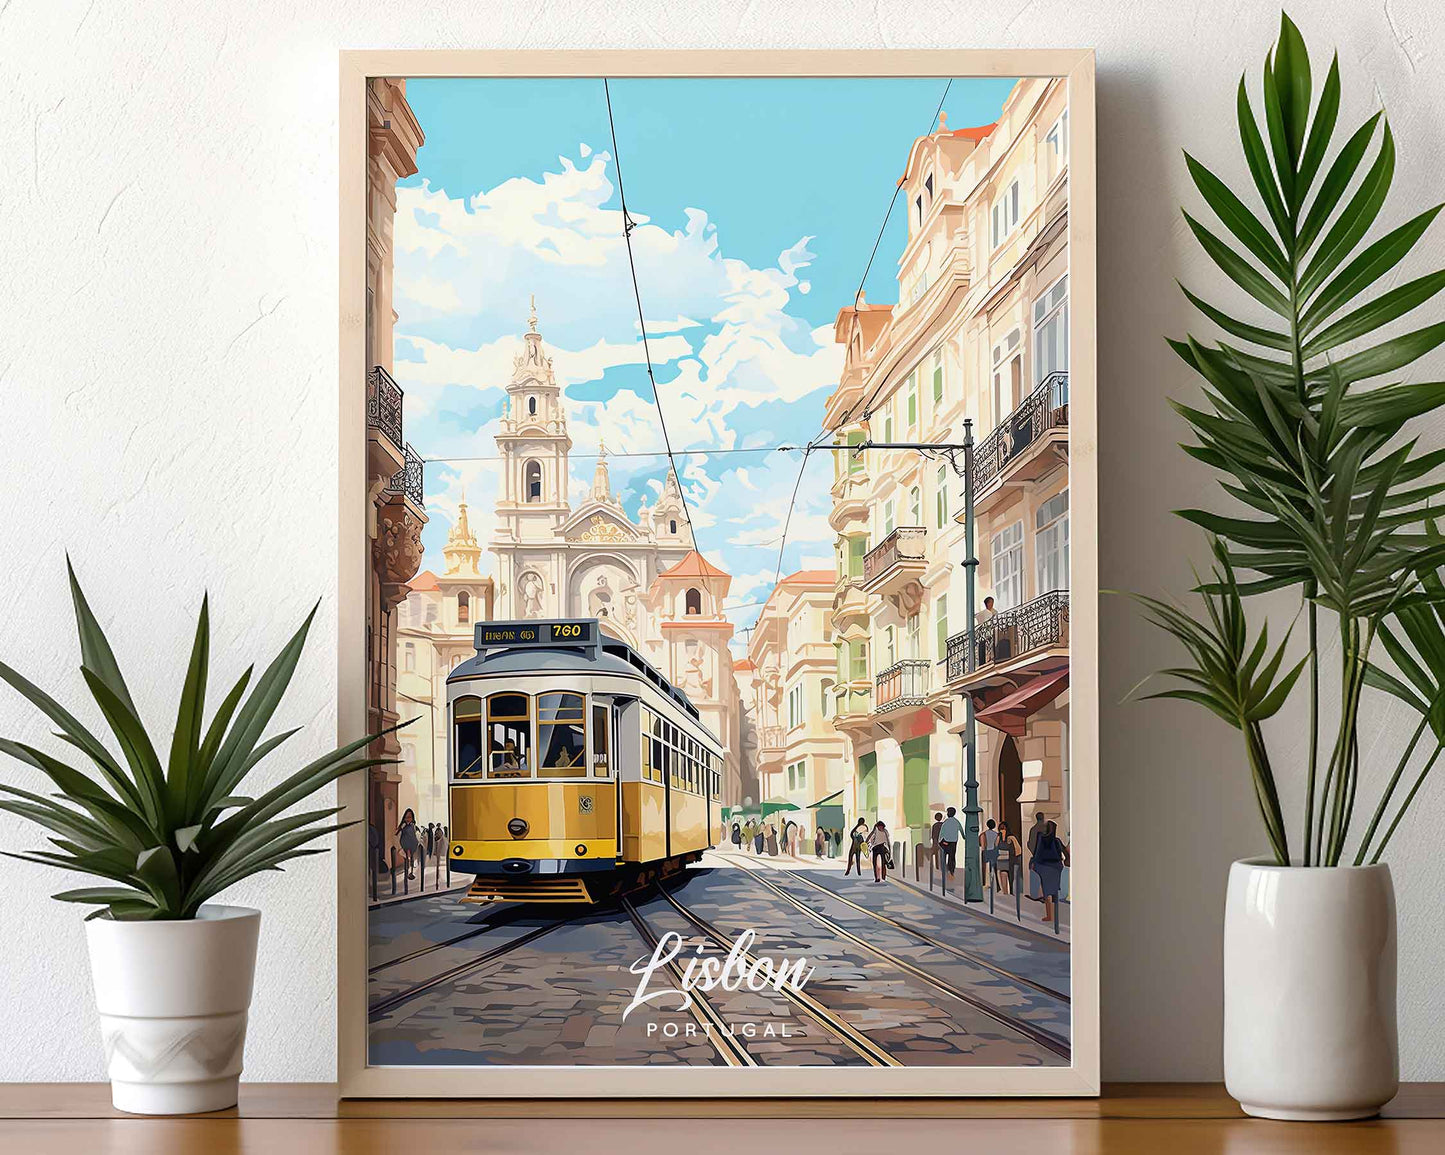 Framed Image of Lisbon Portugal Travel Poster Prints Illustration Wall Art